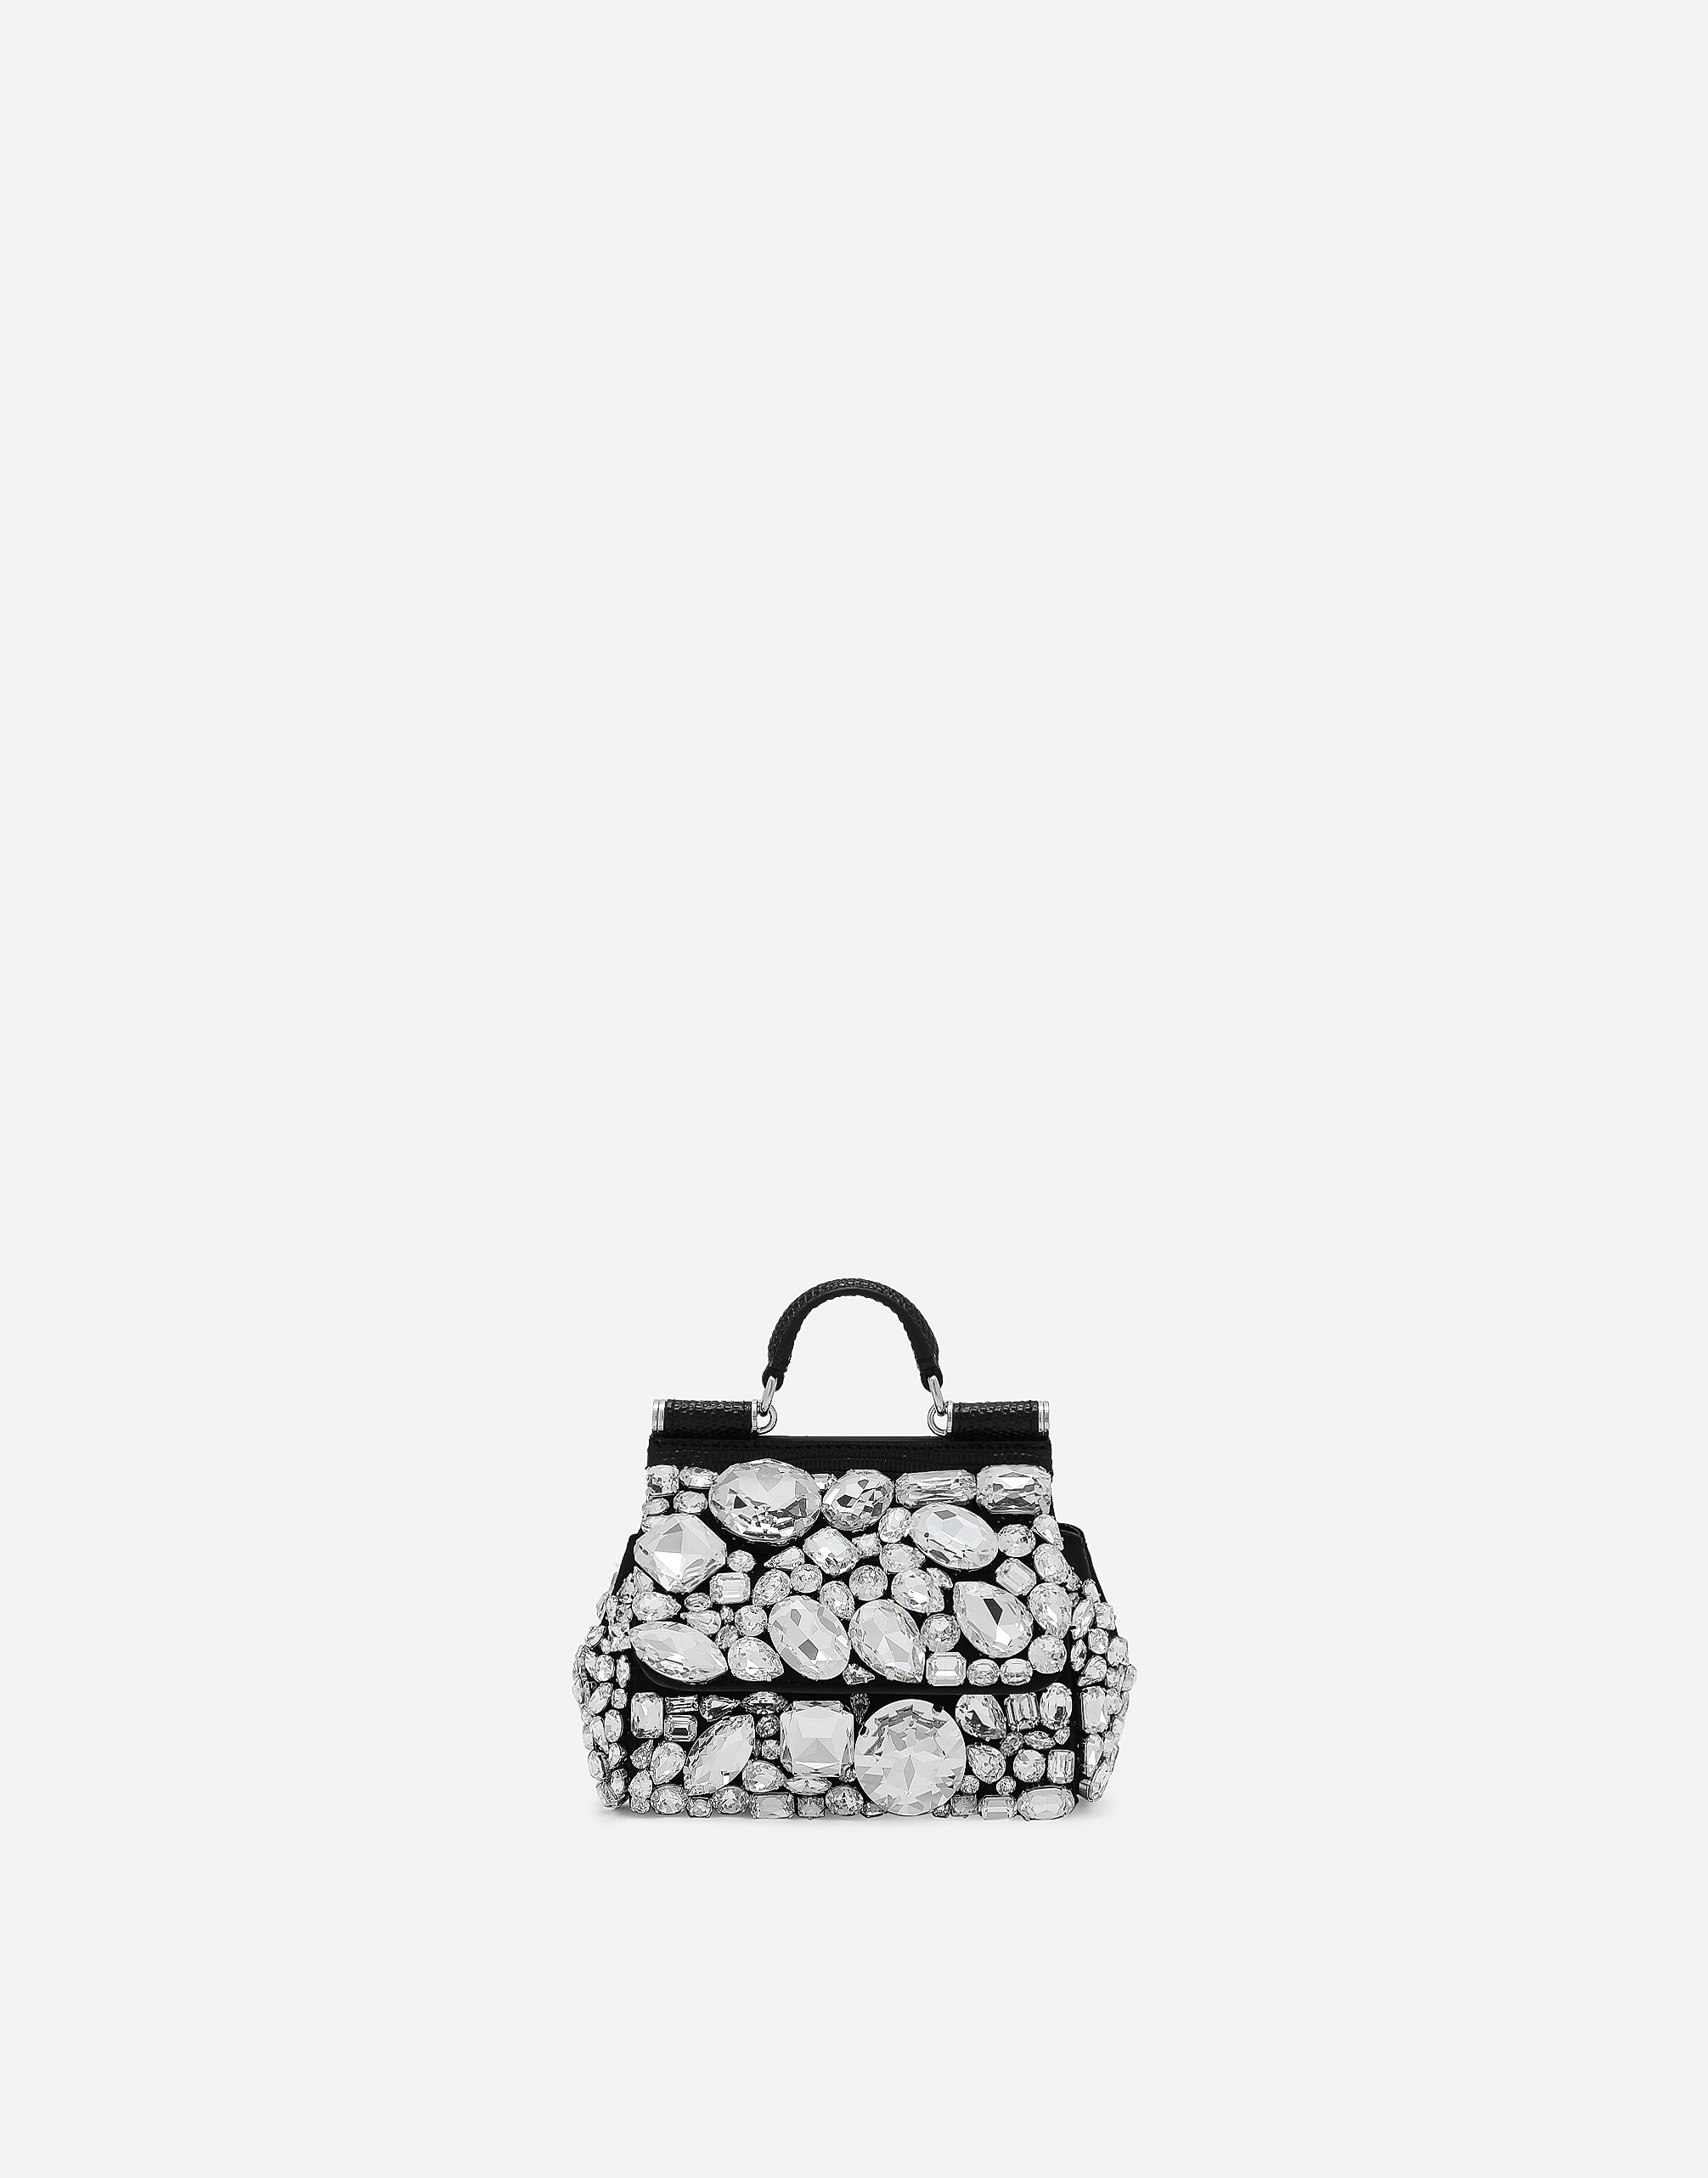 Dolce & Gabbana - Designer Bag Collection - Black Exotic Leather Shoulder  Sling Alta Sartoria Bag